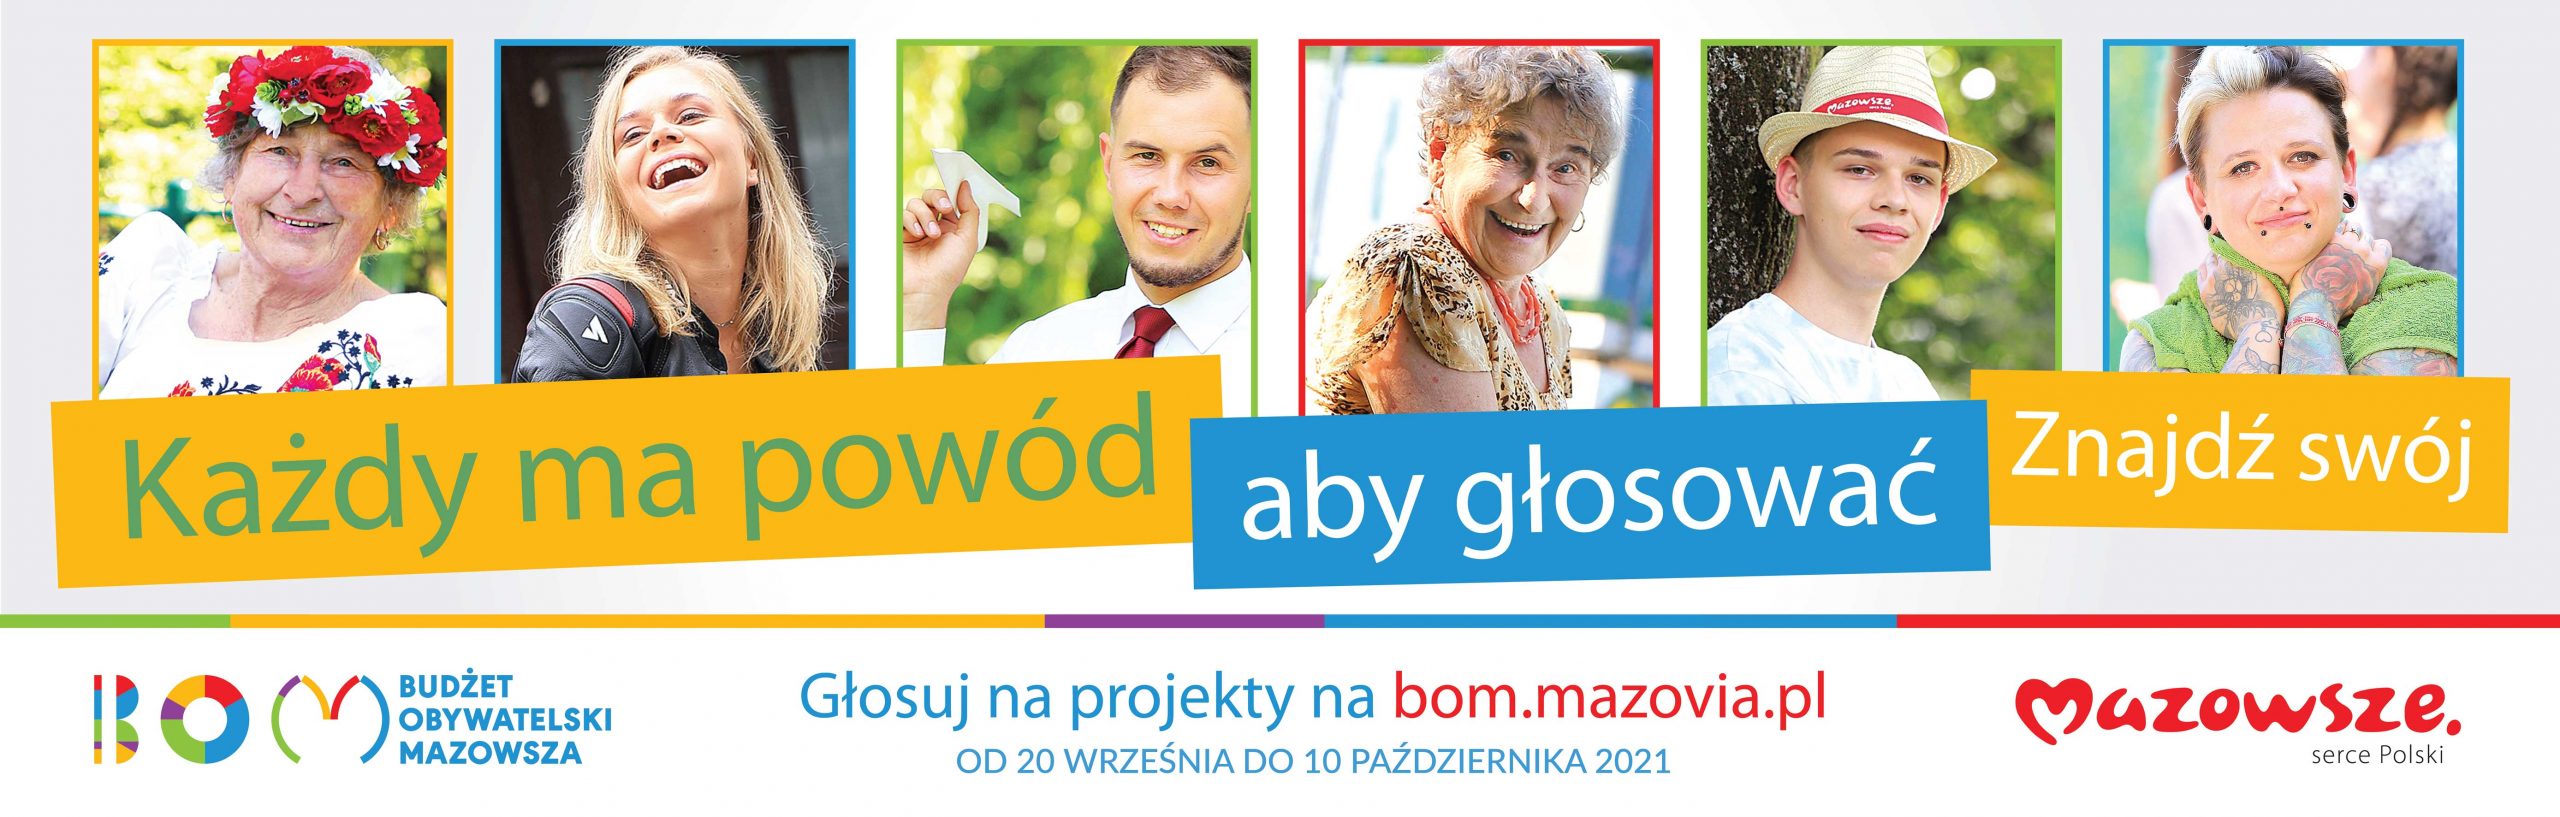 Plakat propagujący Budżet Obywatelski Mazowsza